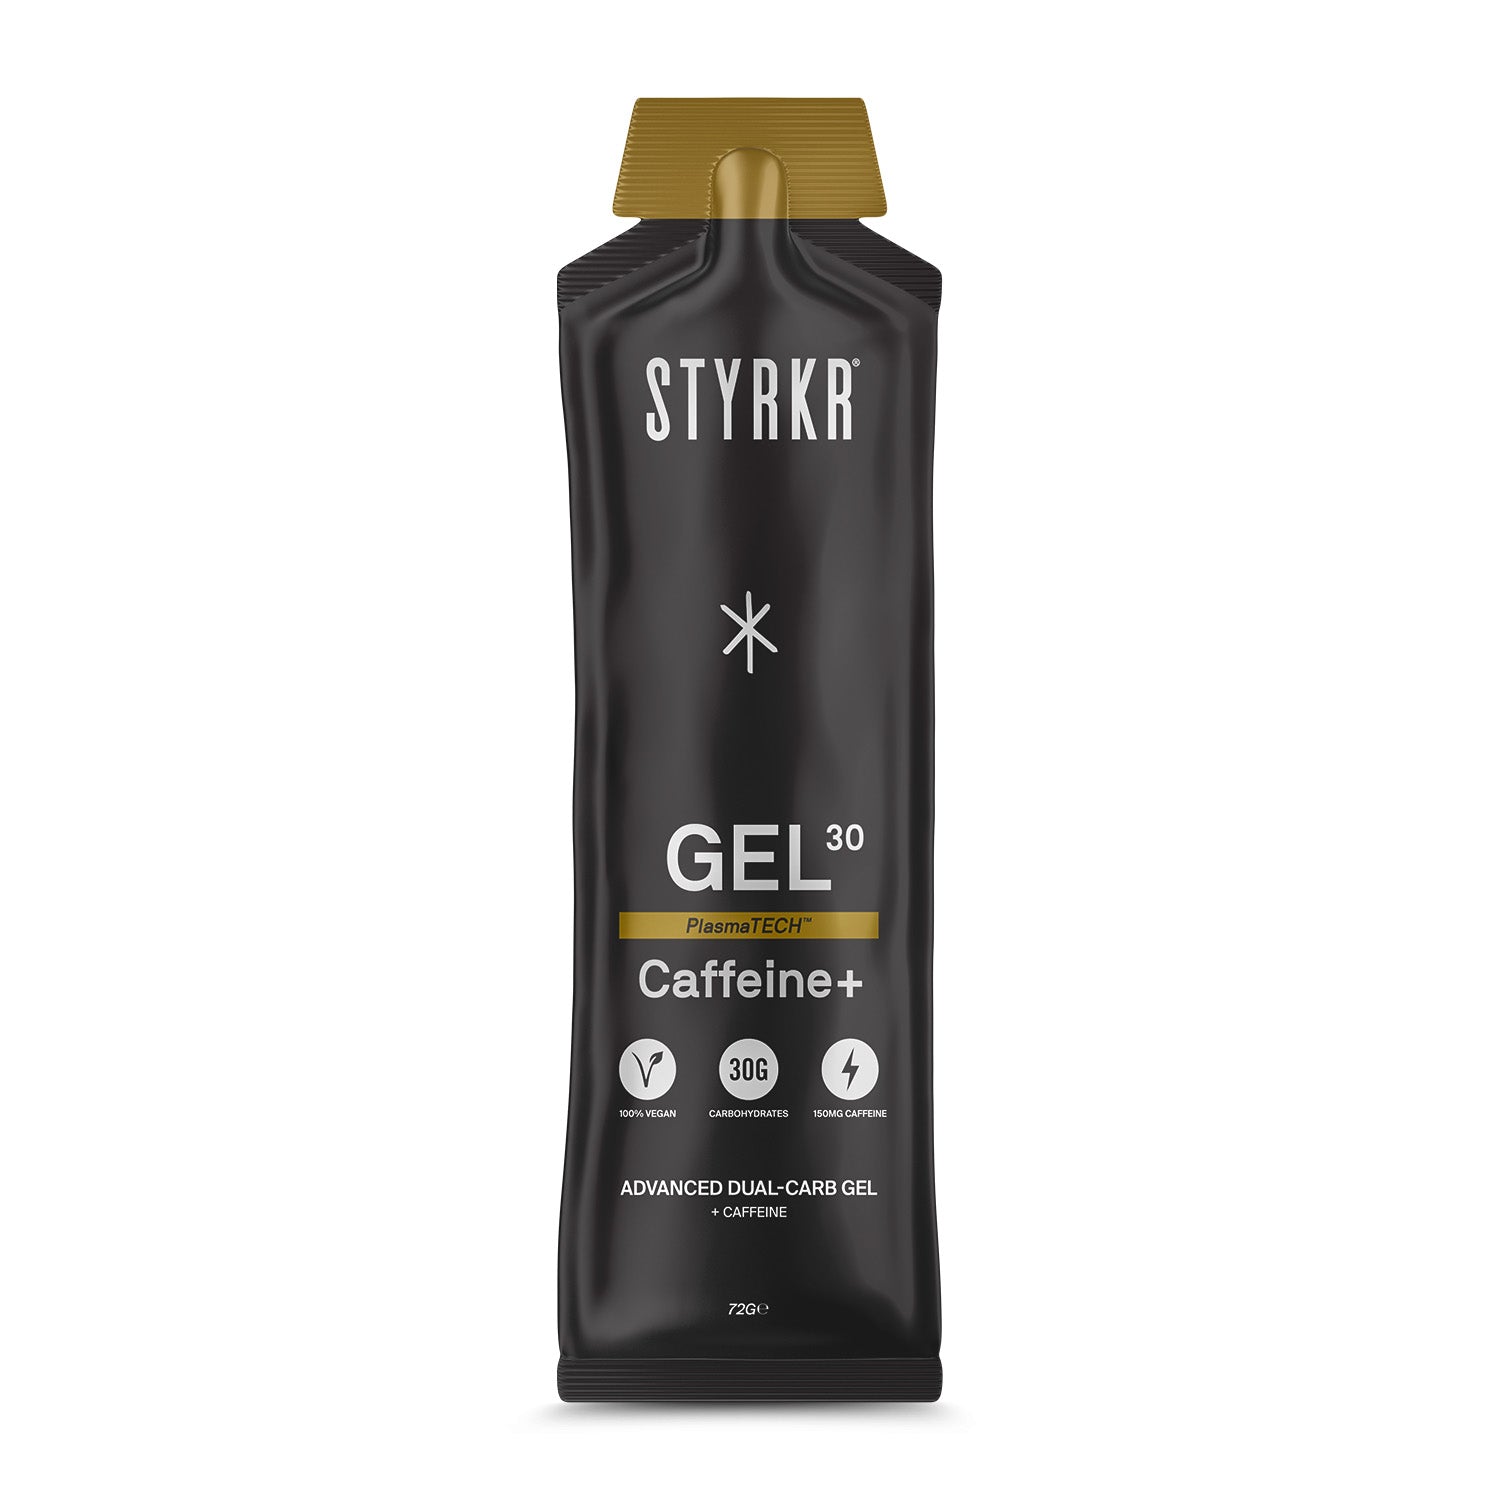 STYRKR Gel30 Gel energetico doppio carboidrato Caffeina 150mg Box (12x72gr)